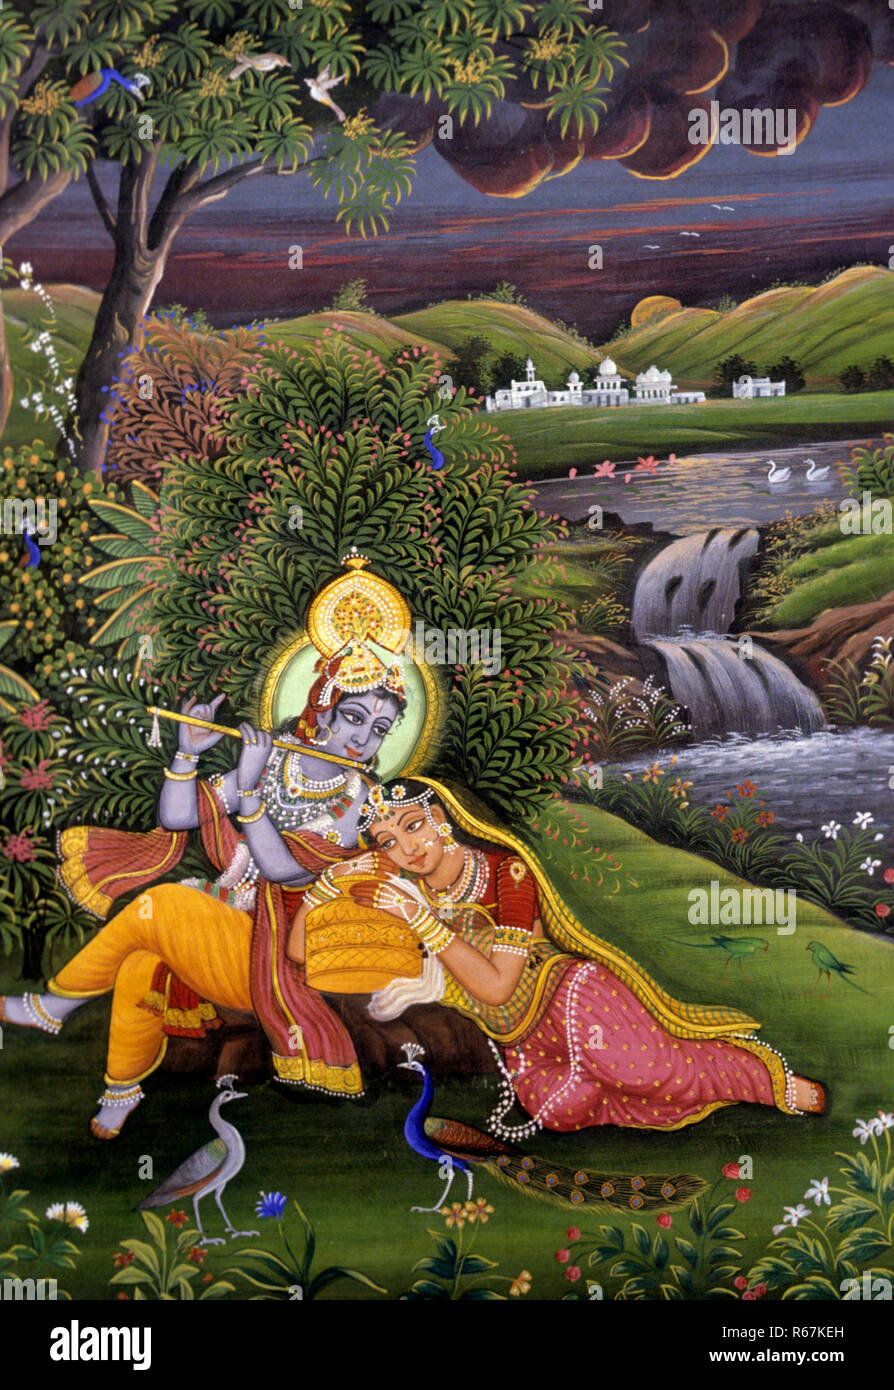 Radha Krishna in garden, Miniature Painting, India Stock Photo